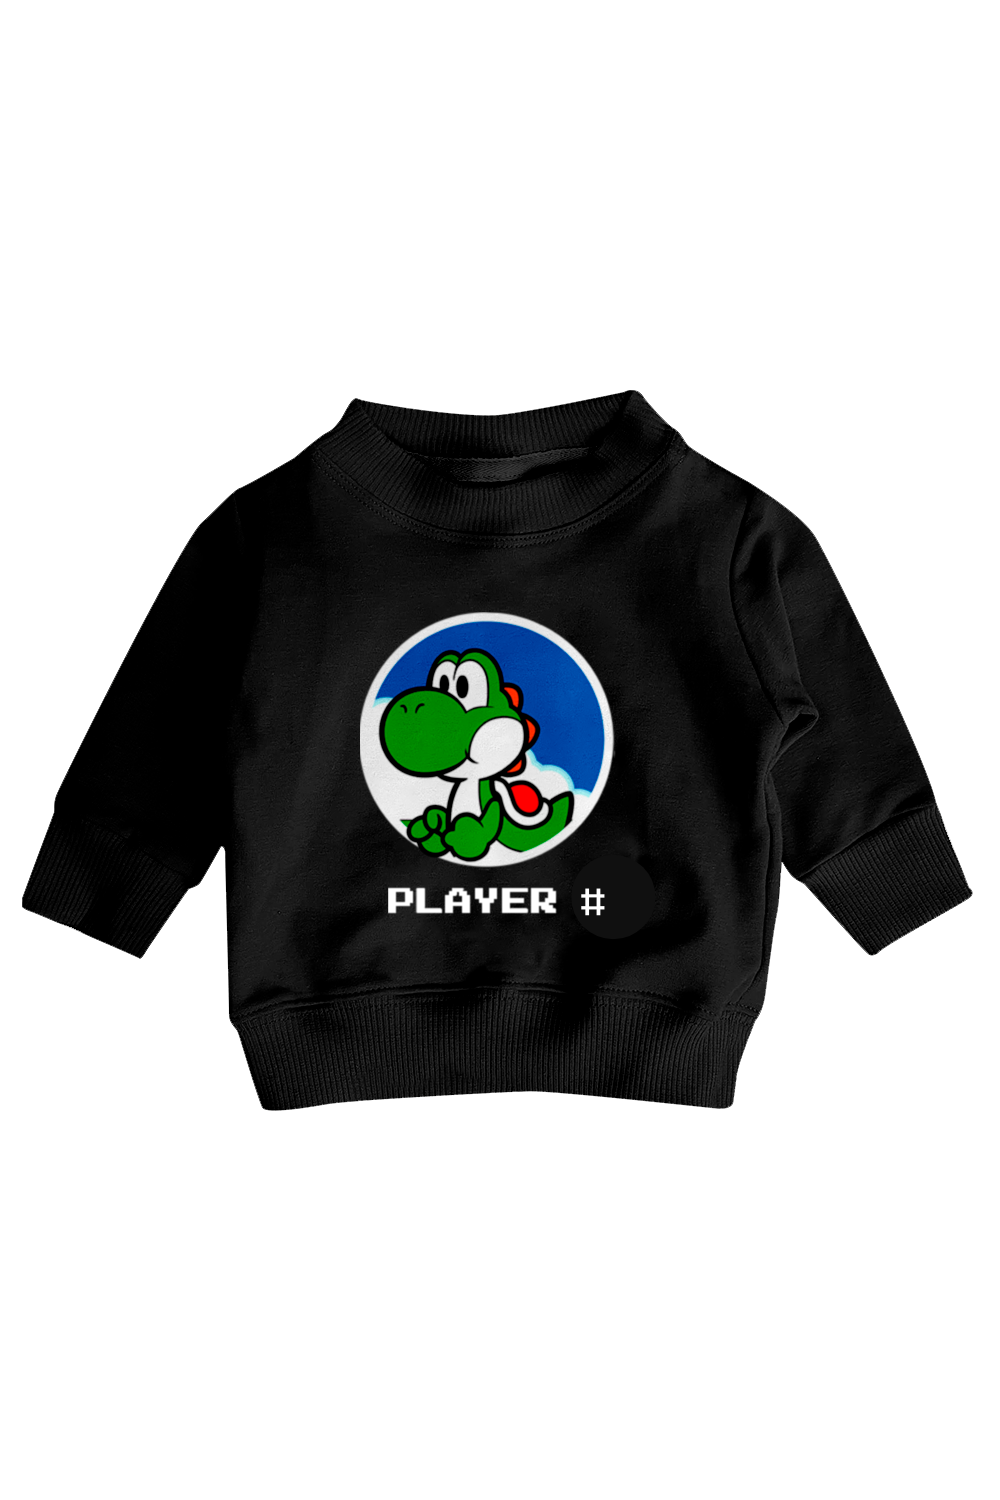 Sudadera Ligera Kids. Player (Número personalizado)